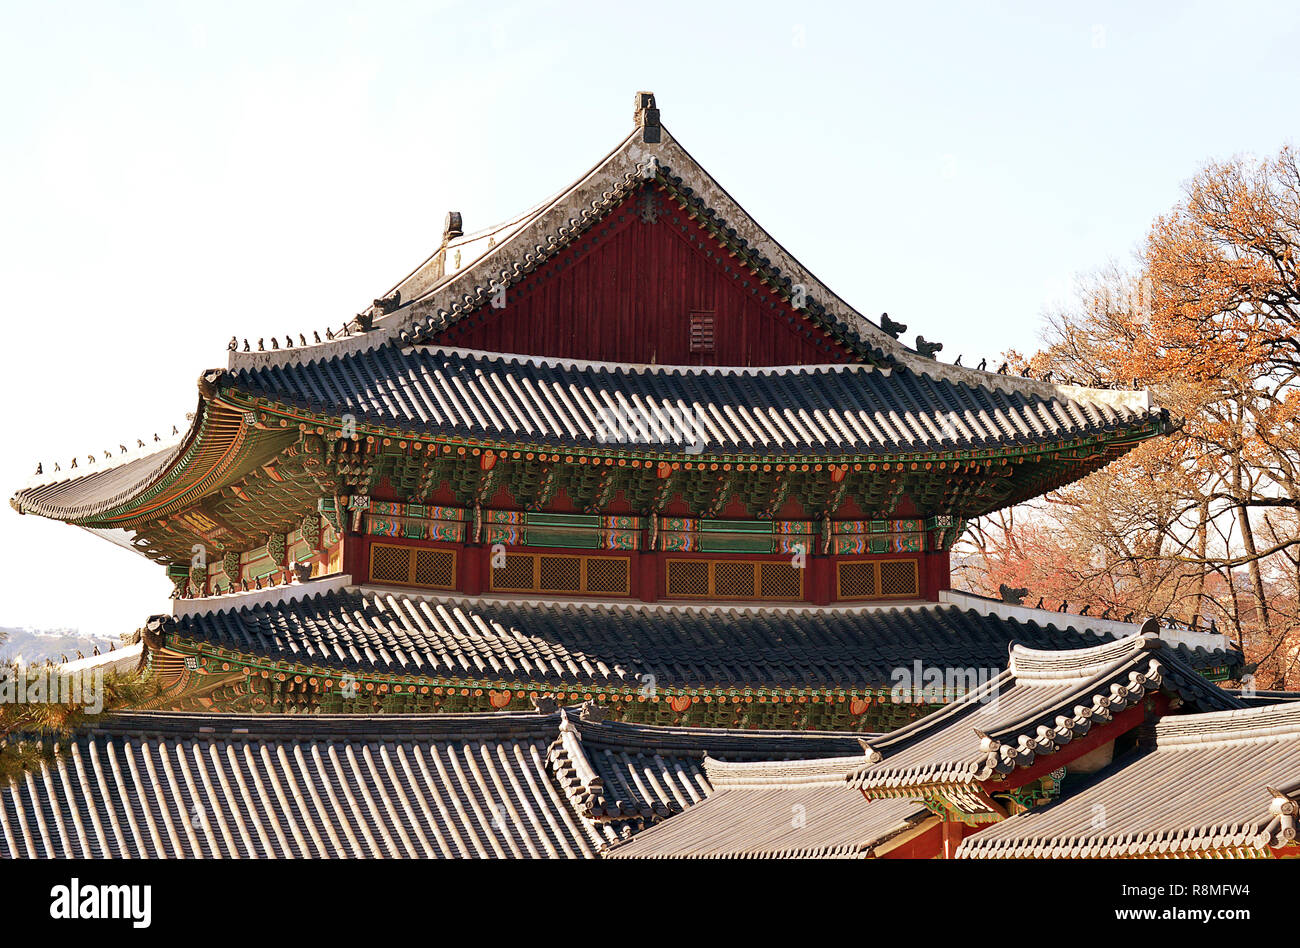 Tetti Hipped, piastrelle, decorazioni dipinte e eremiti, i monaci e i mostri sul tetto come custodi, coreano sontuosa architettura a Changdeokgung Foto Stock